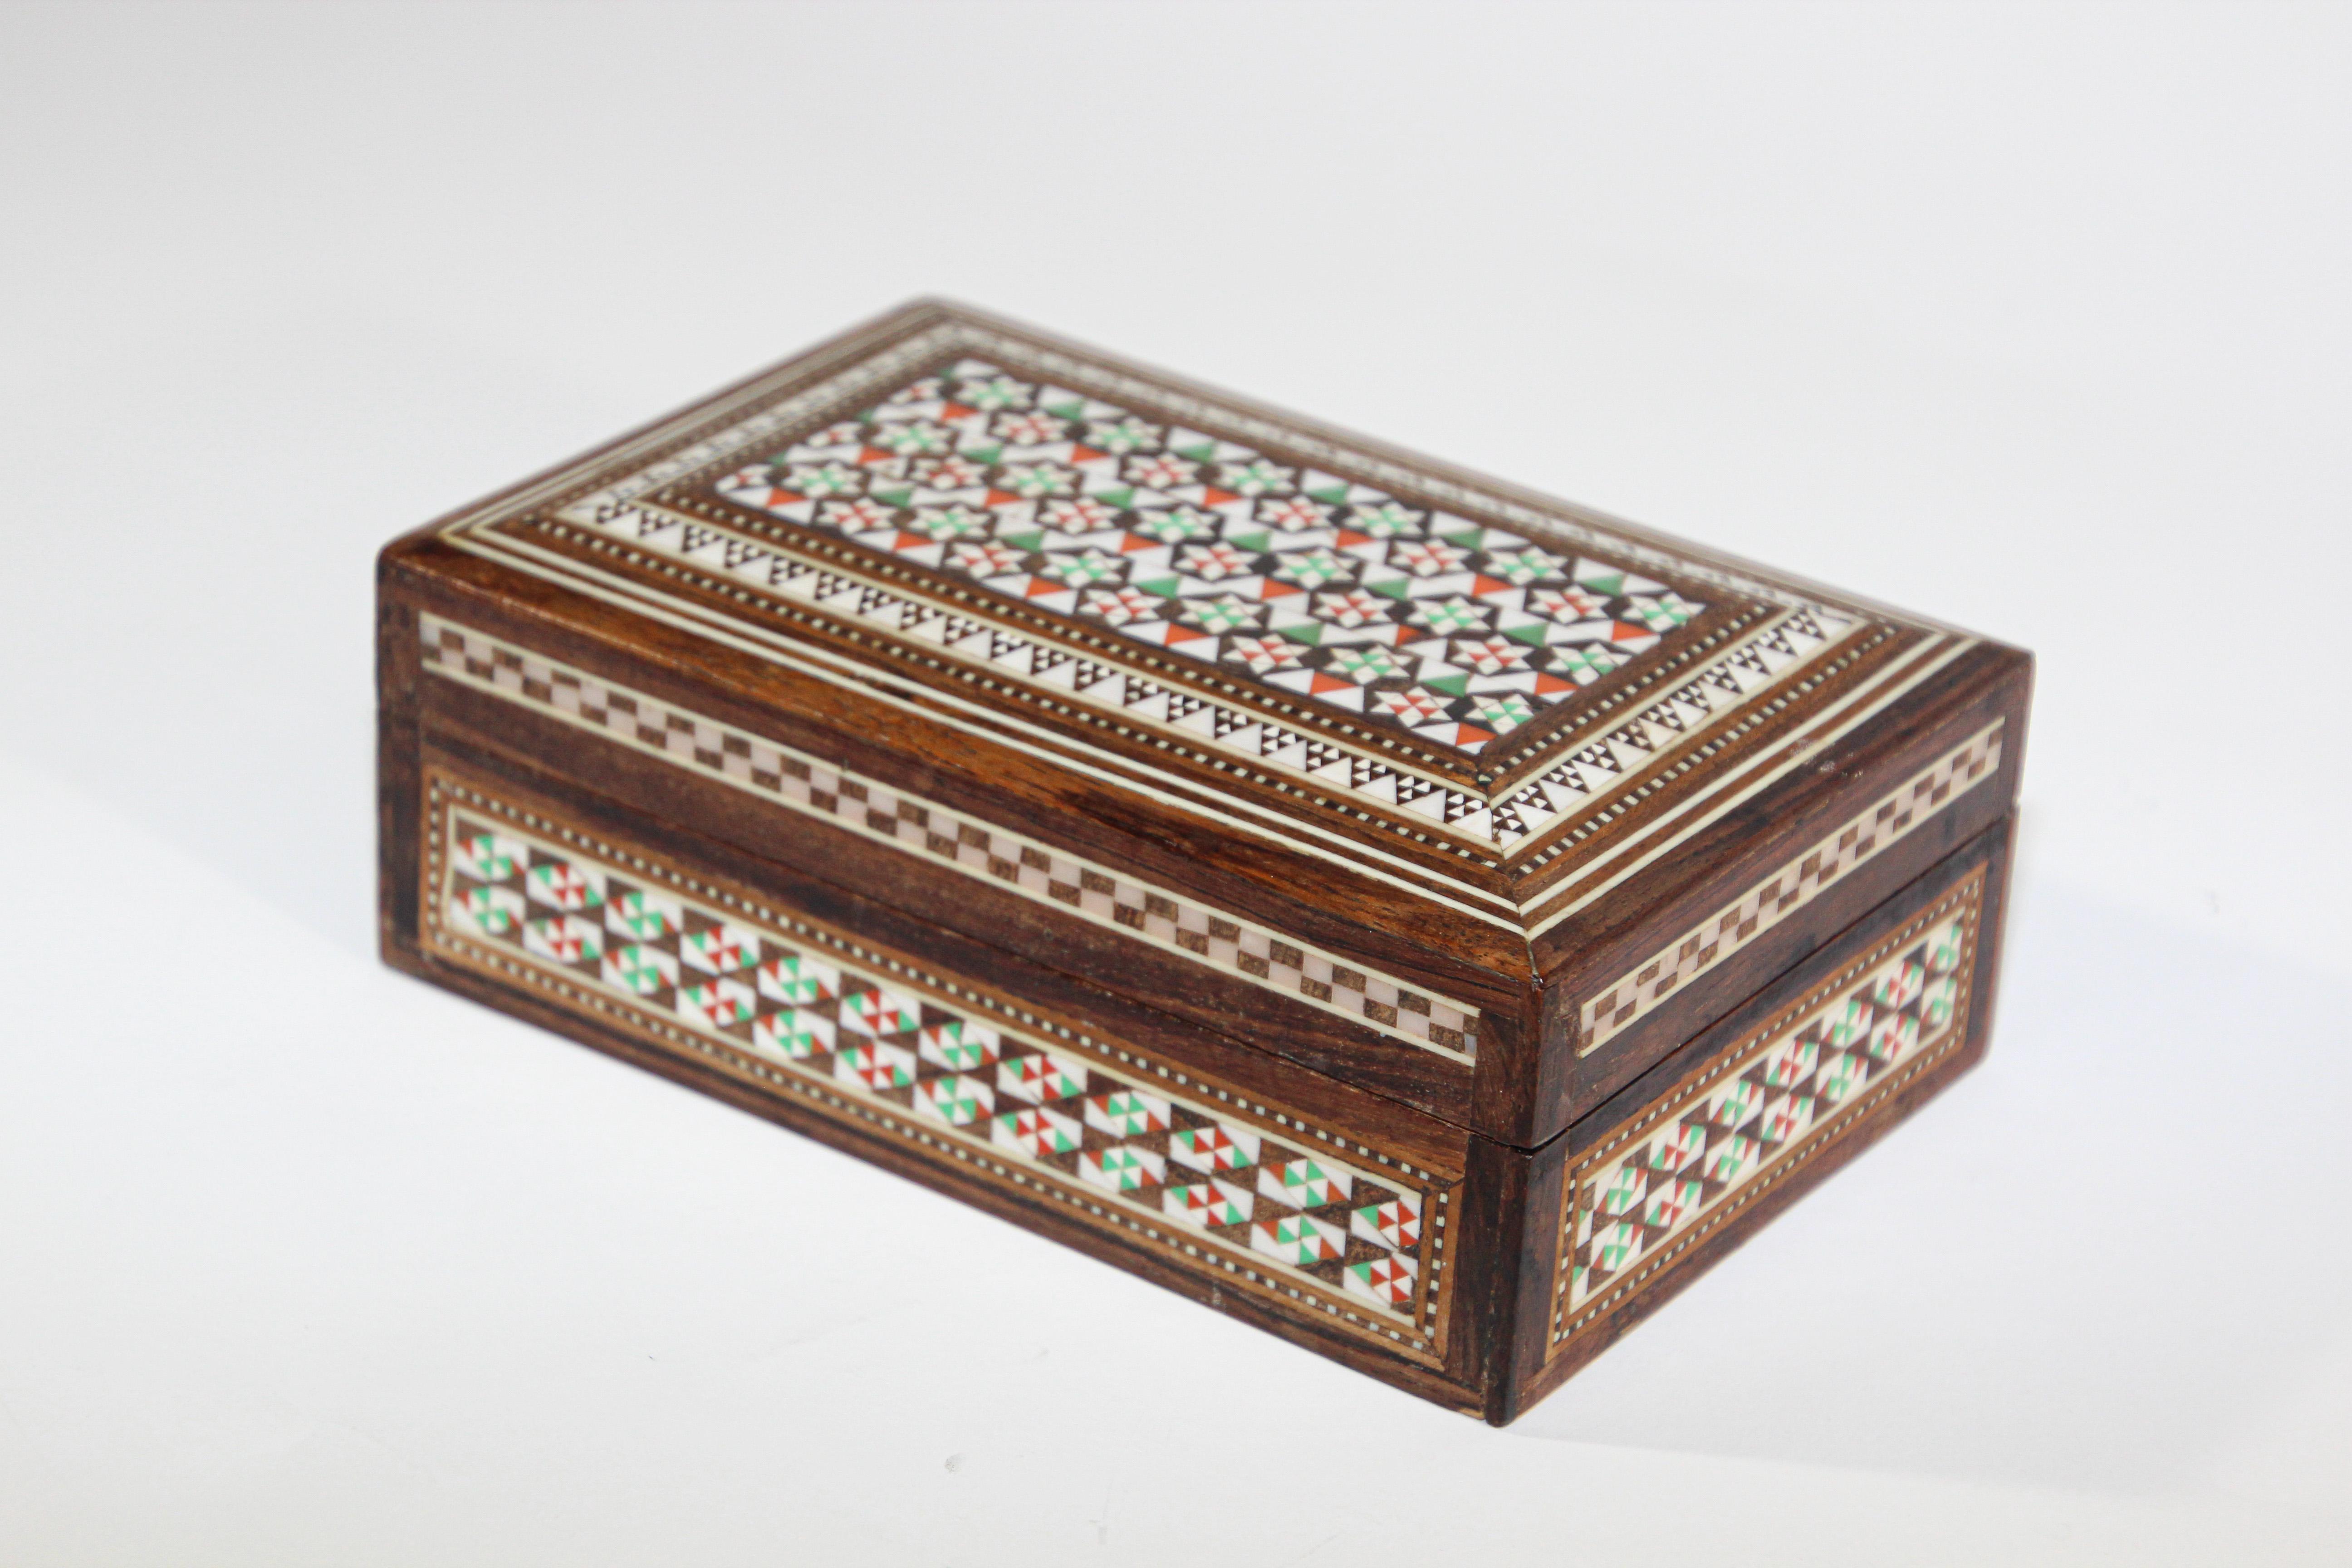 Marqueterie artisanale de bois mauresque, micro-mosaïque avec scène miniature peinte à la main.
Boîte en bois khatam fabriquée à la main avec une marqueterie de micro-mosaïques très délicate, issue de l'ancienne technique persane d'incrustation à